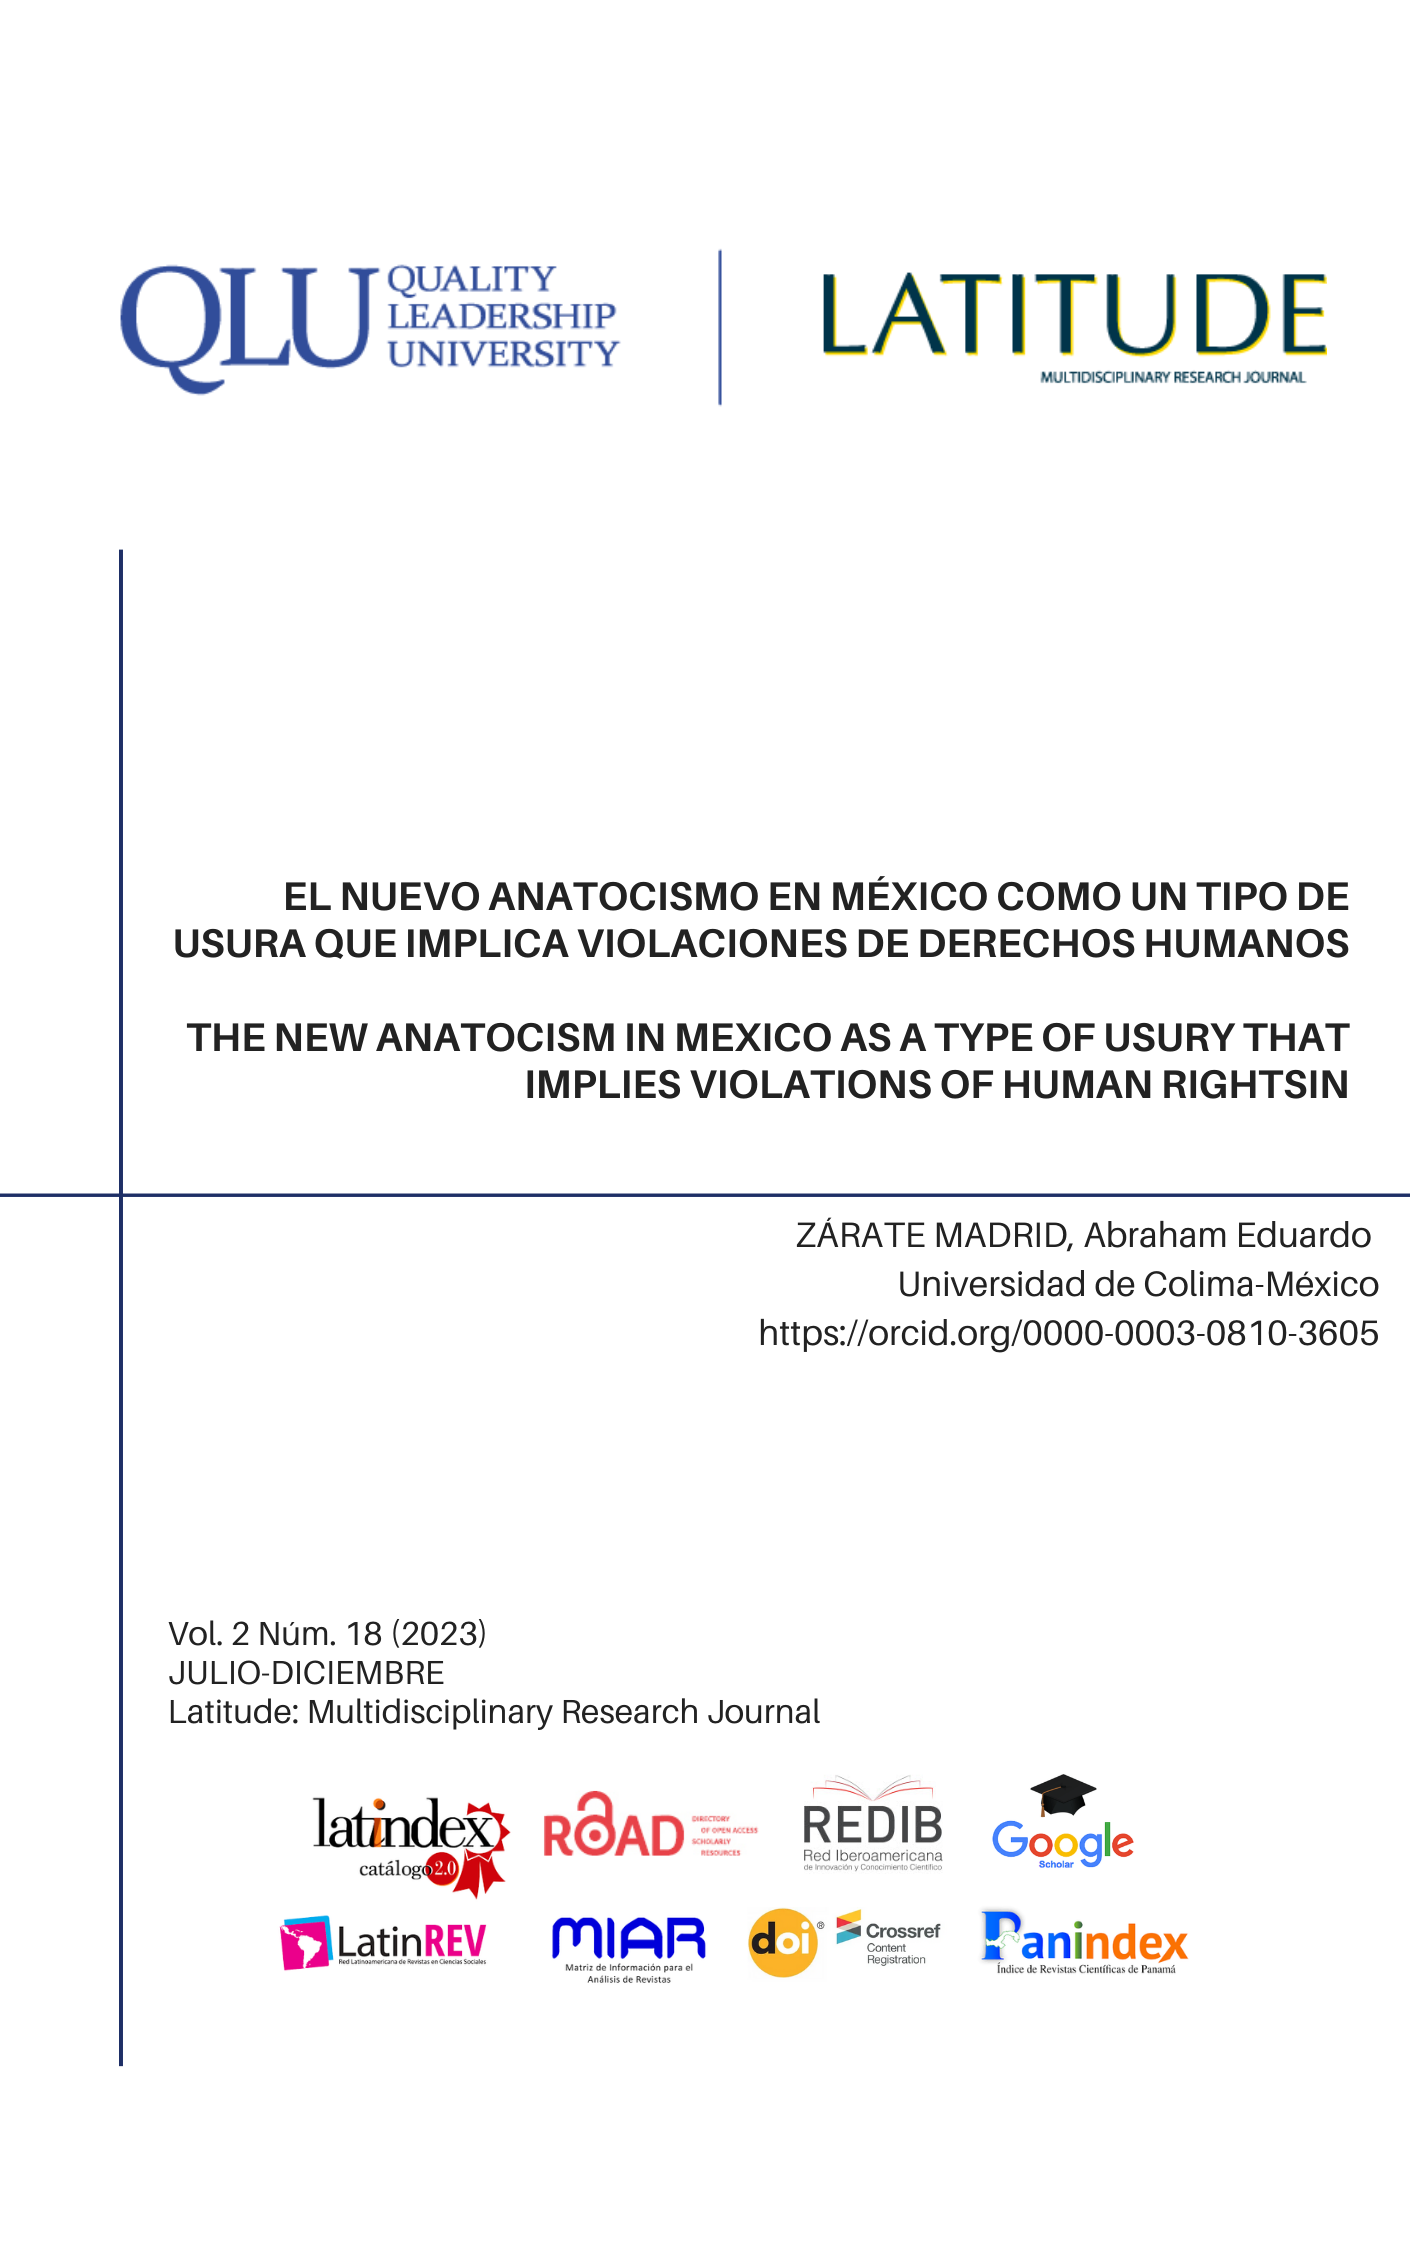 El autor en su publicación el nuevo anatocismo en México...